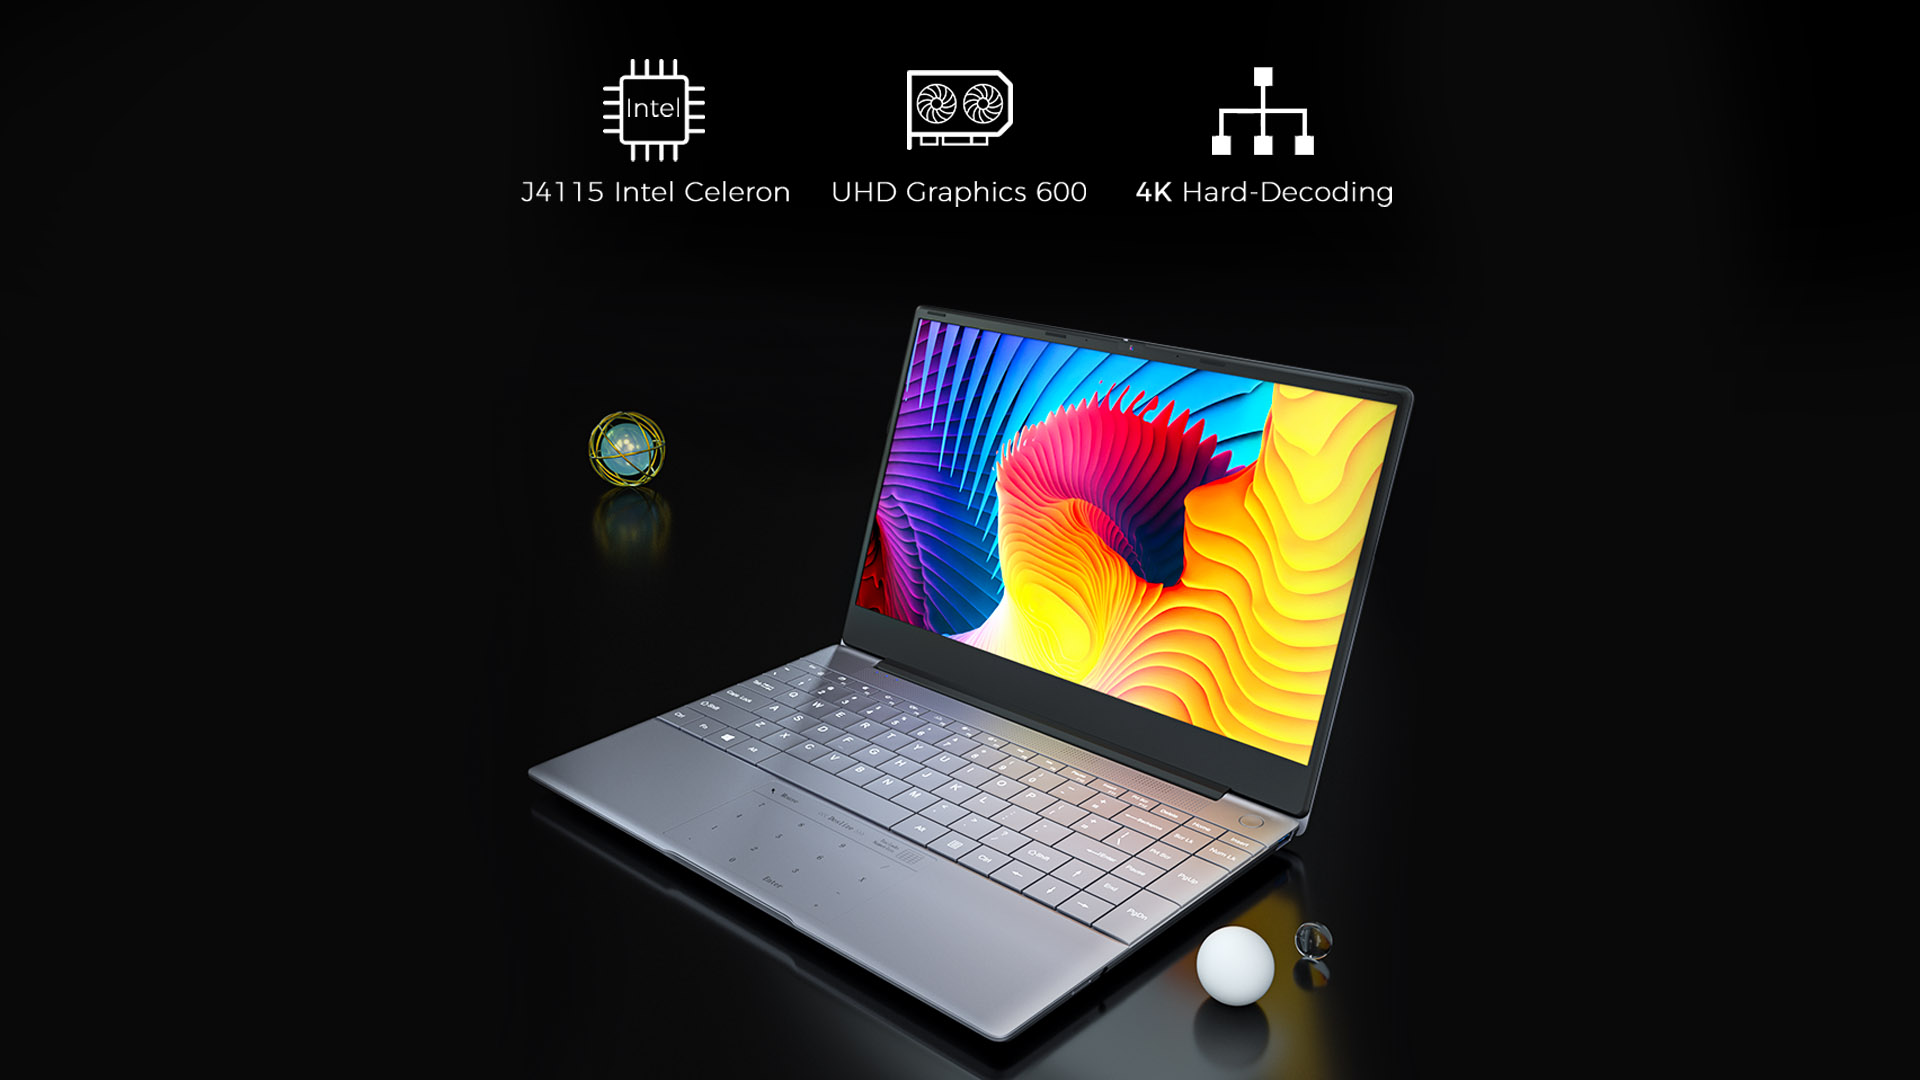 KUU K2S 14.1 inch Laptop, Intel Celeron J4115 Quad Core Up to 2.5Ghz, 8GB RAM 256GB SSD 19